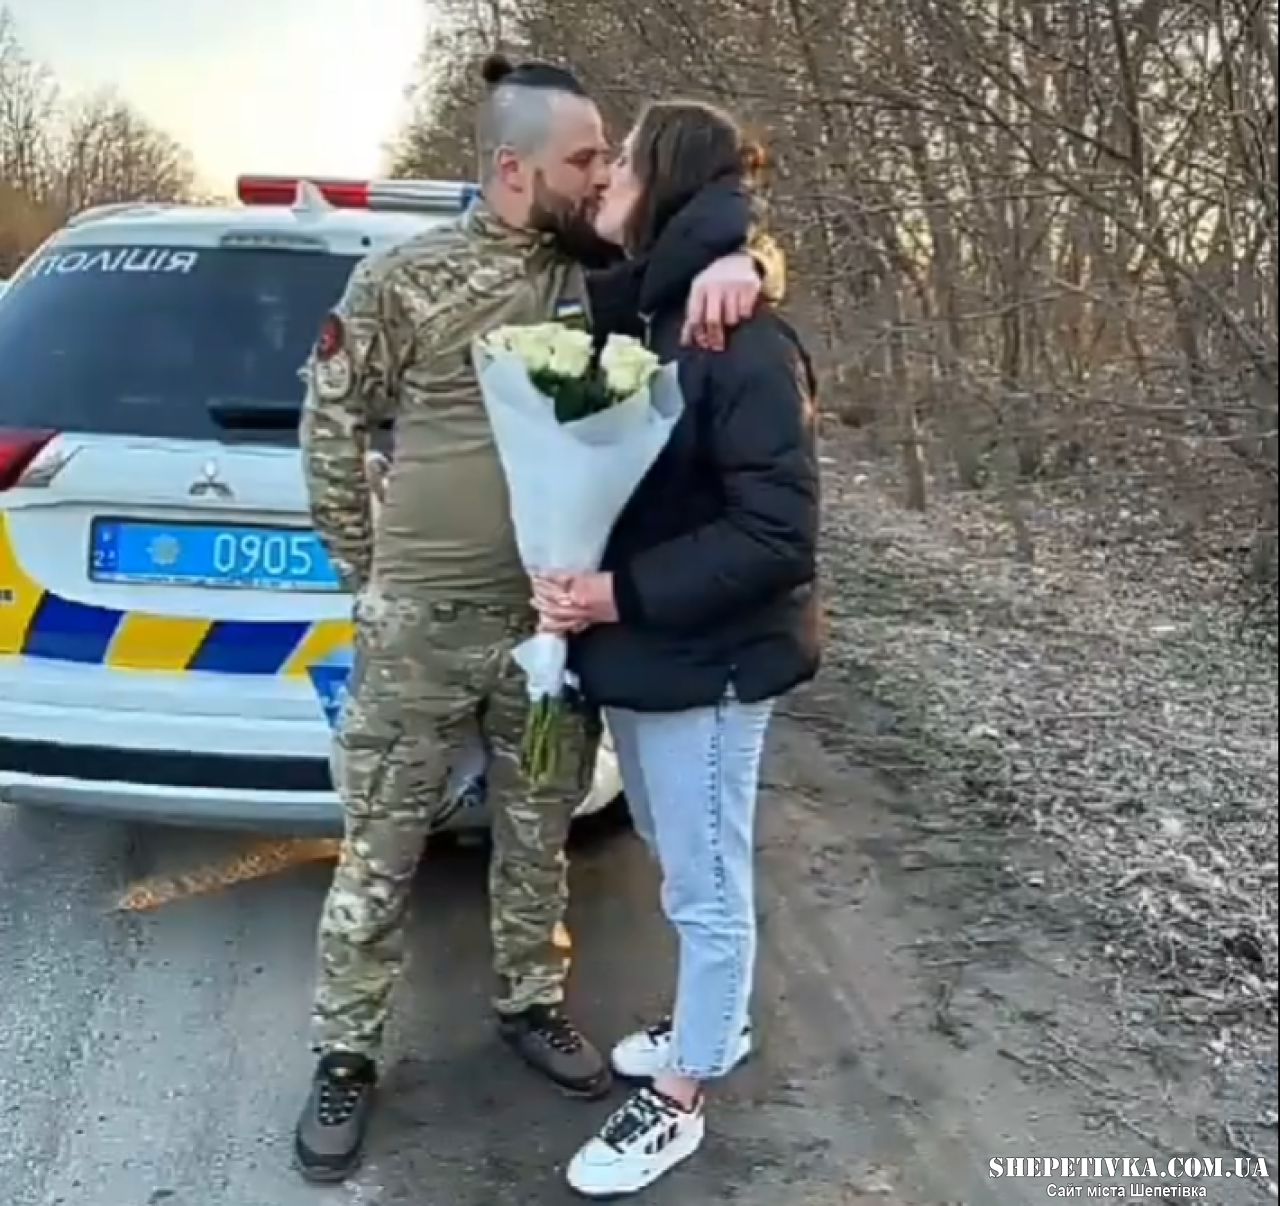 Ще один військовий у Шепетівці освідчився коханій за допомогою поліціянтів